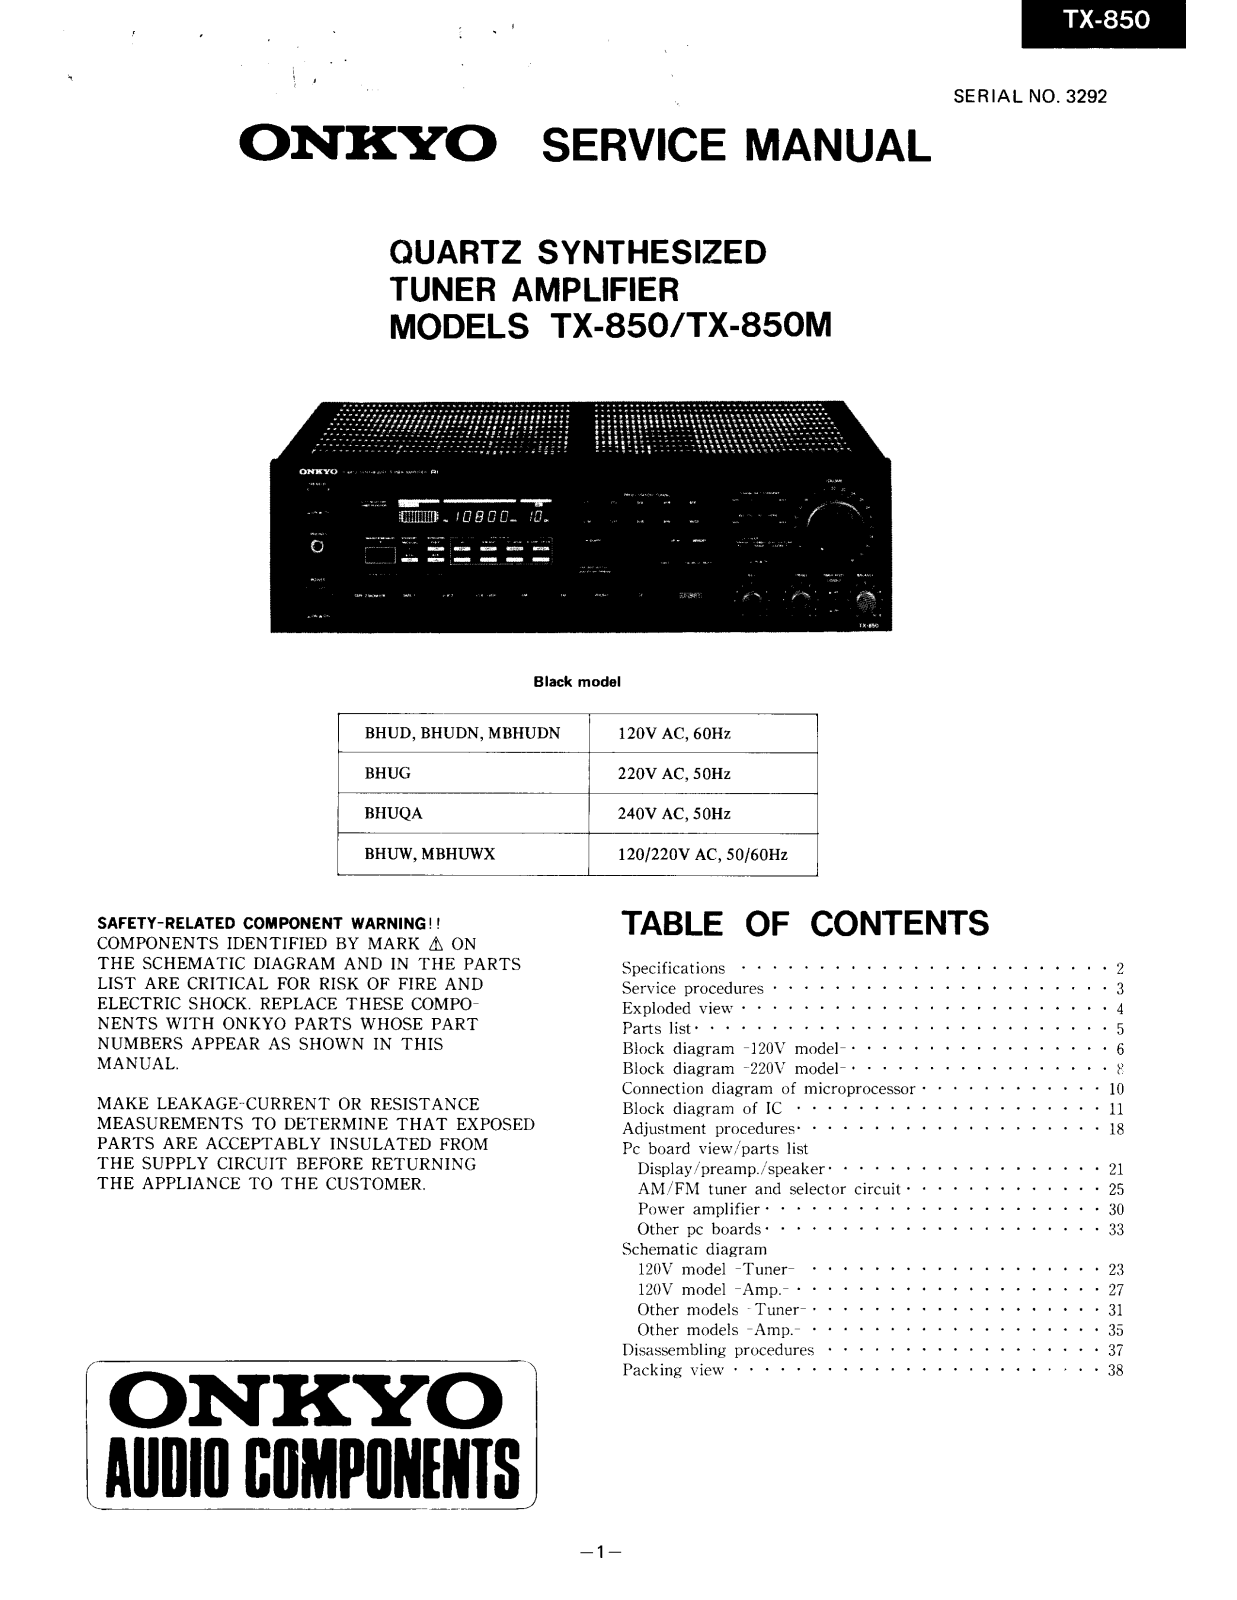 Onkyo TX-850, TX-850-M Service Manual